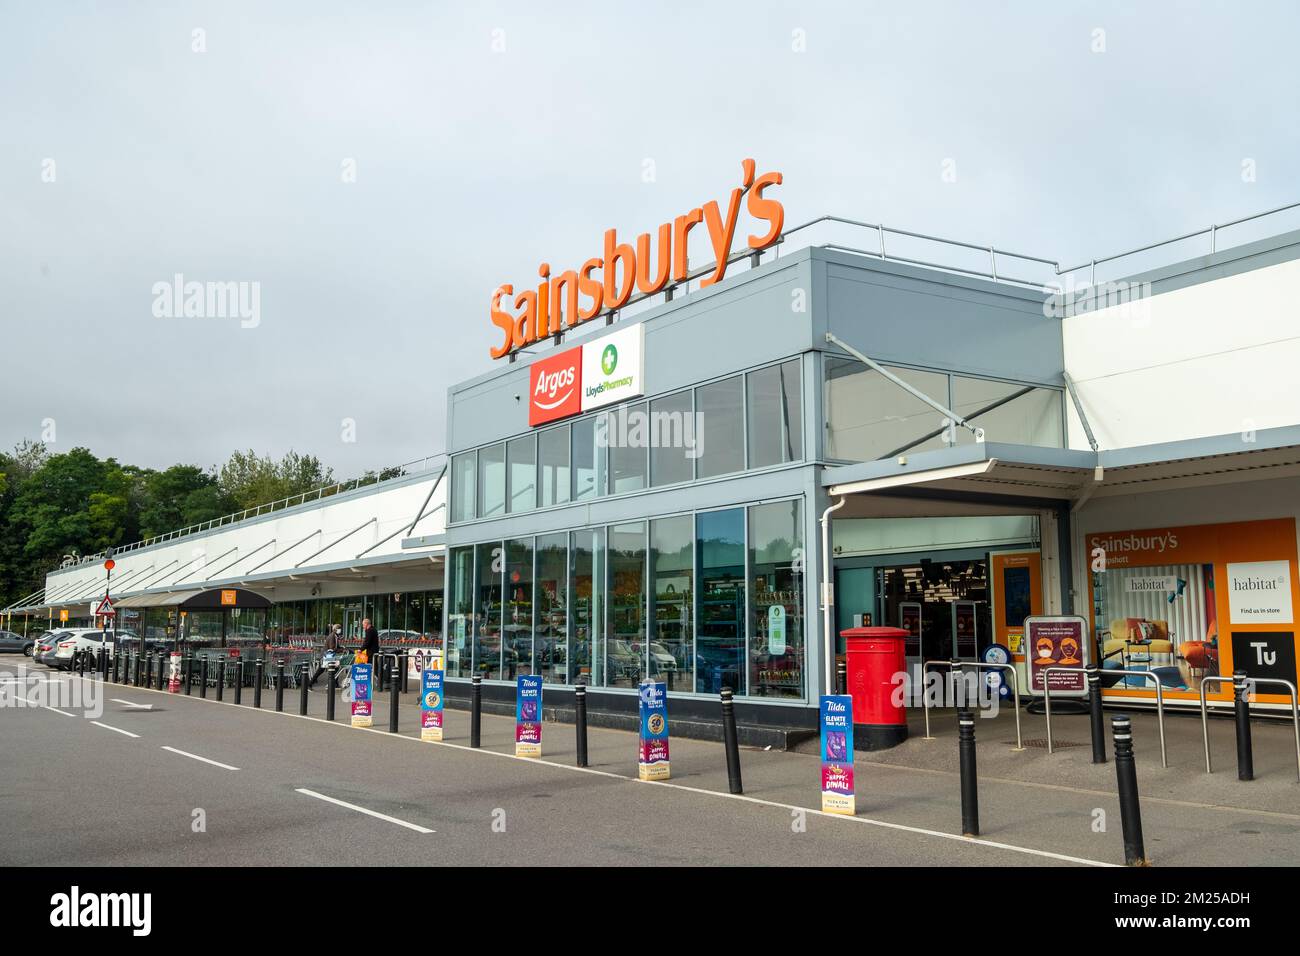 Basingstoke, Regno Unito - Settembre 2022: Ingresso di Sainsbury con l'insegna della farmacia Argos e Lloyds - la principale catena di supermercati britannica Foto Stock